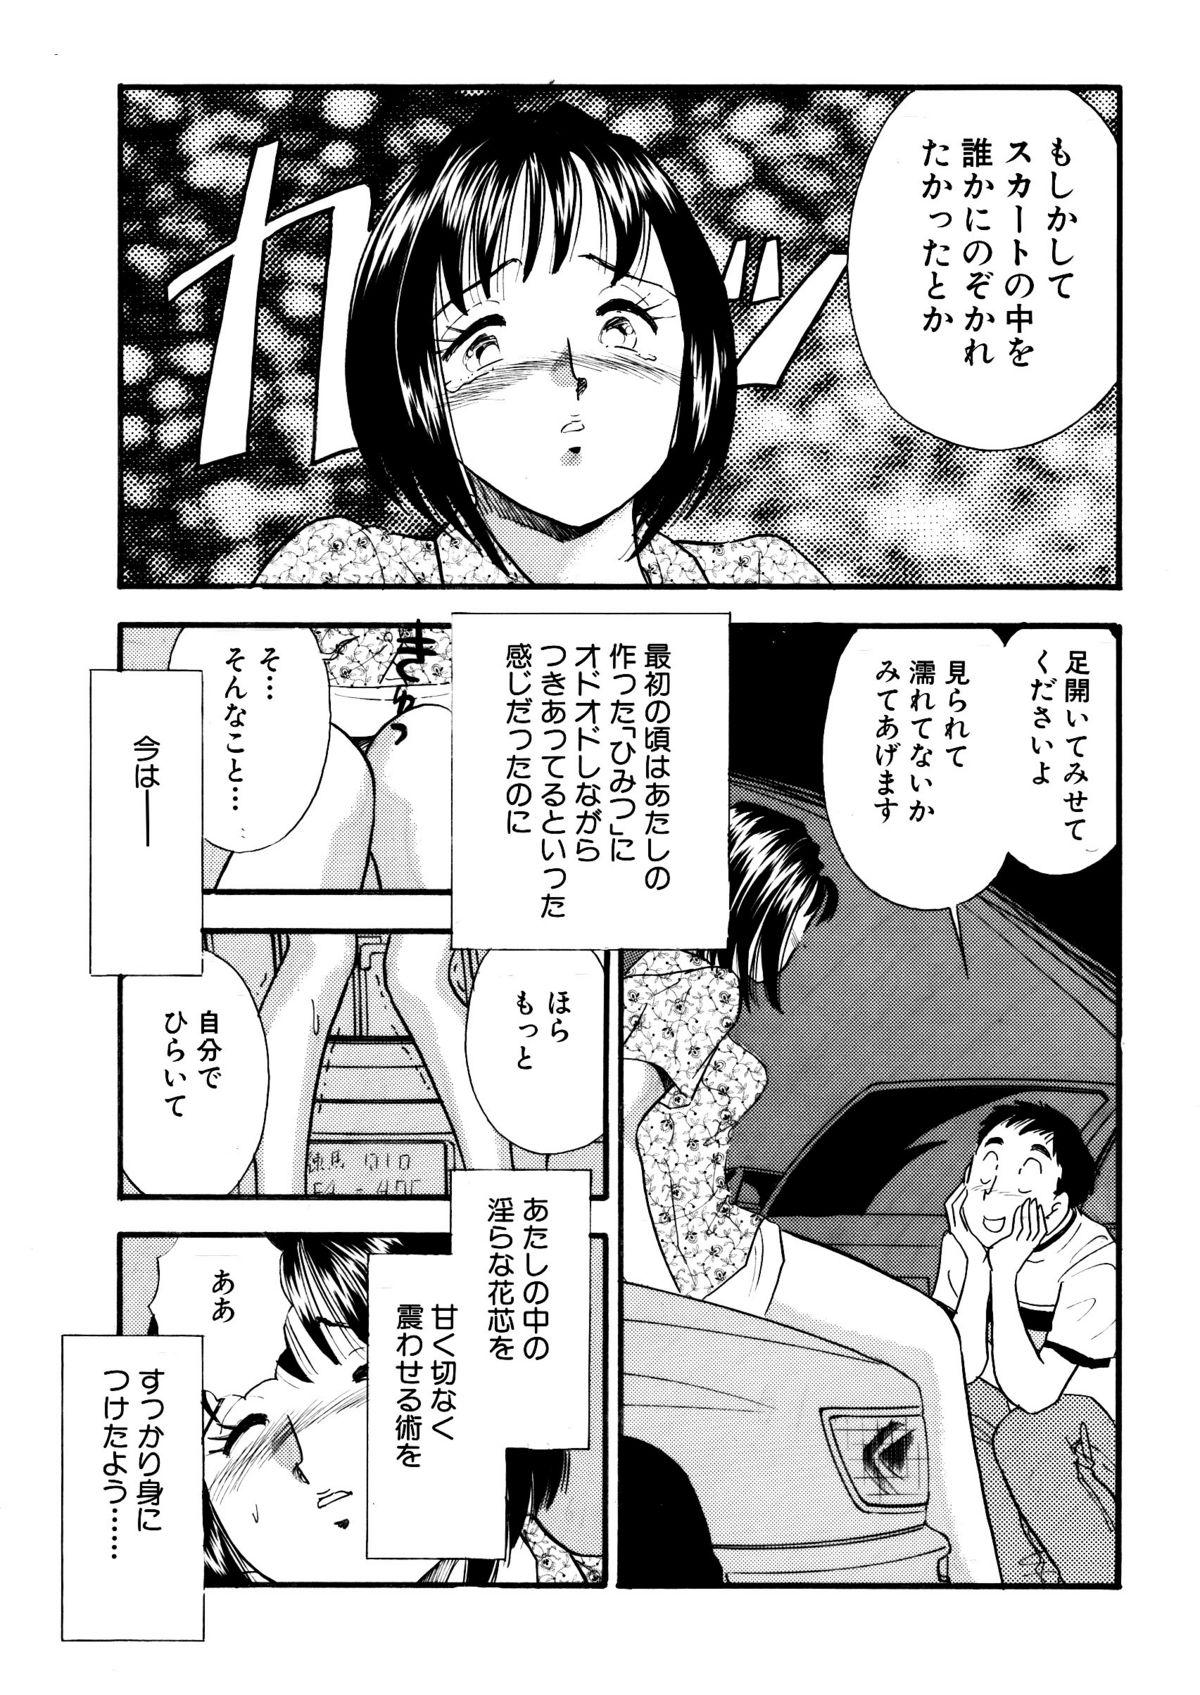 Porra Himitsu Duma 6 Atm - Page 7